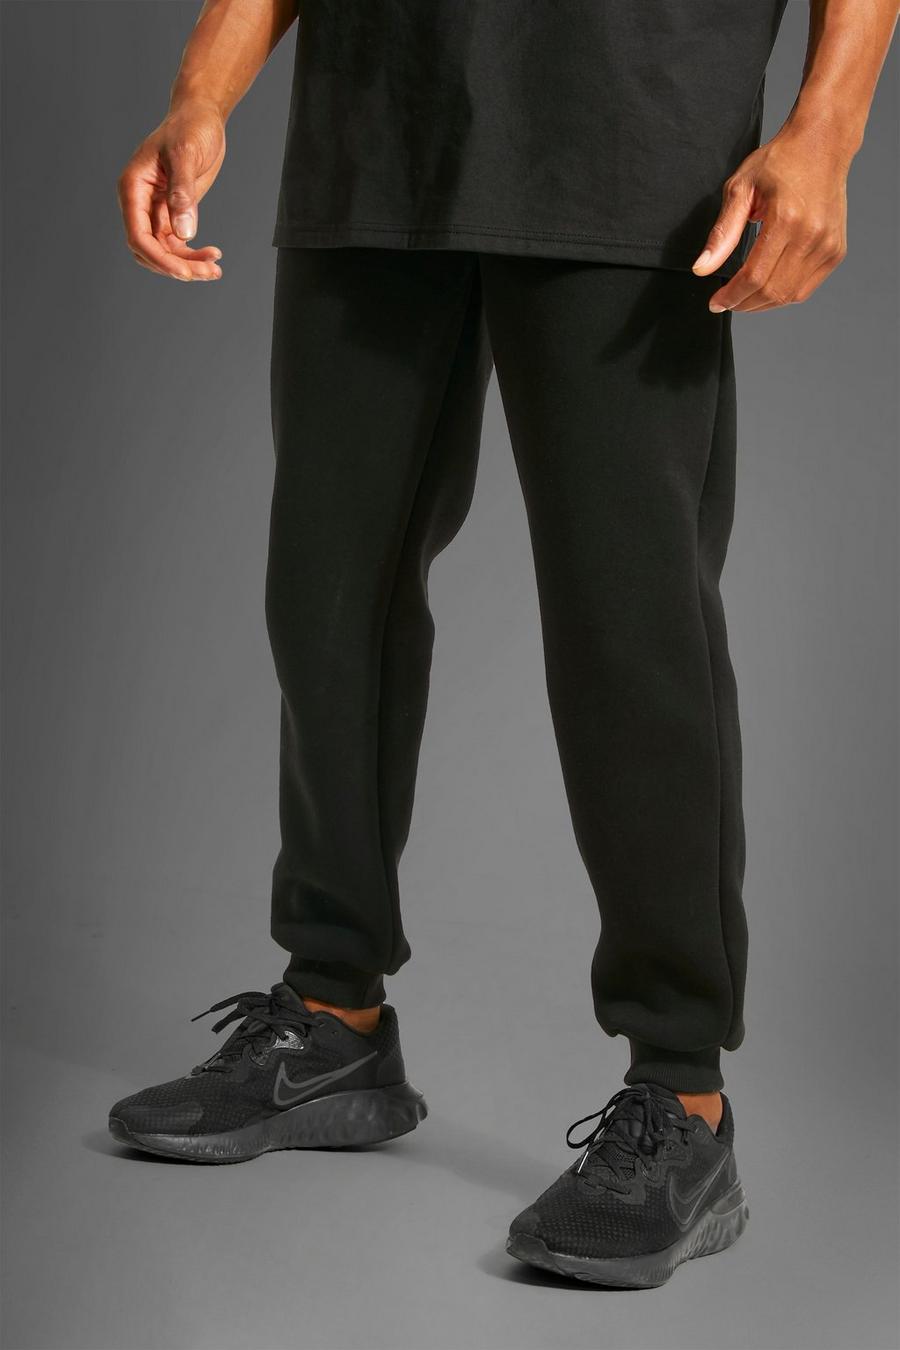 שחור מכנסיים ספורטיביים לחדר הכושר בגזרה משוחררת עם כיתוב Man image number 1